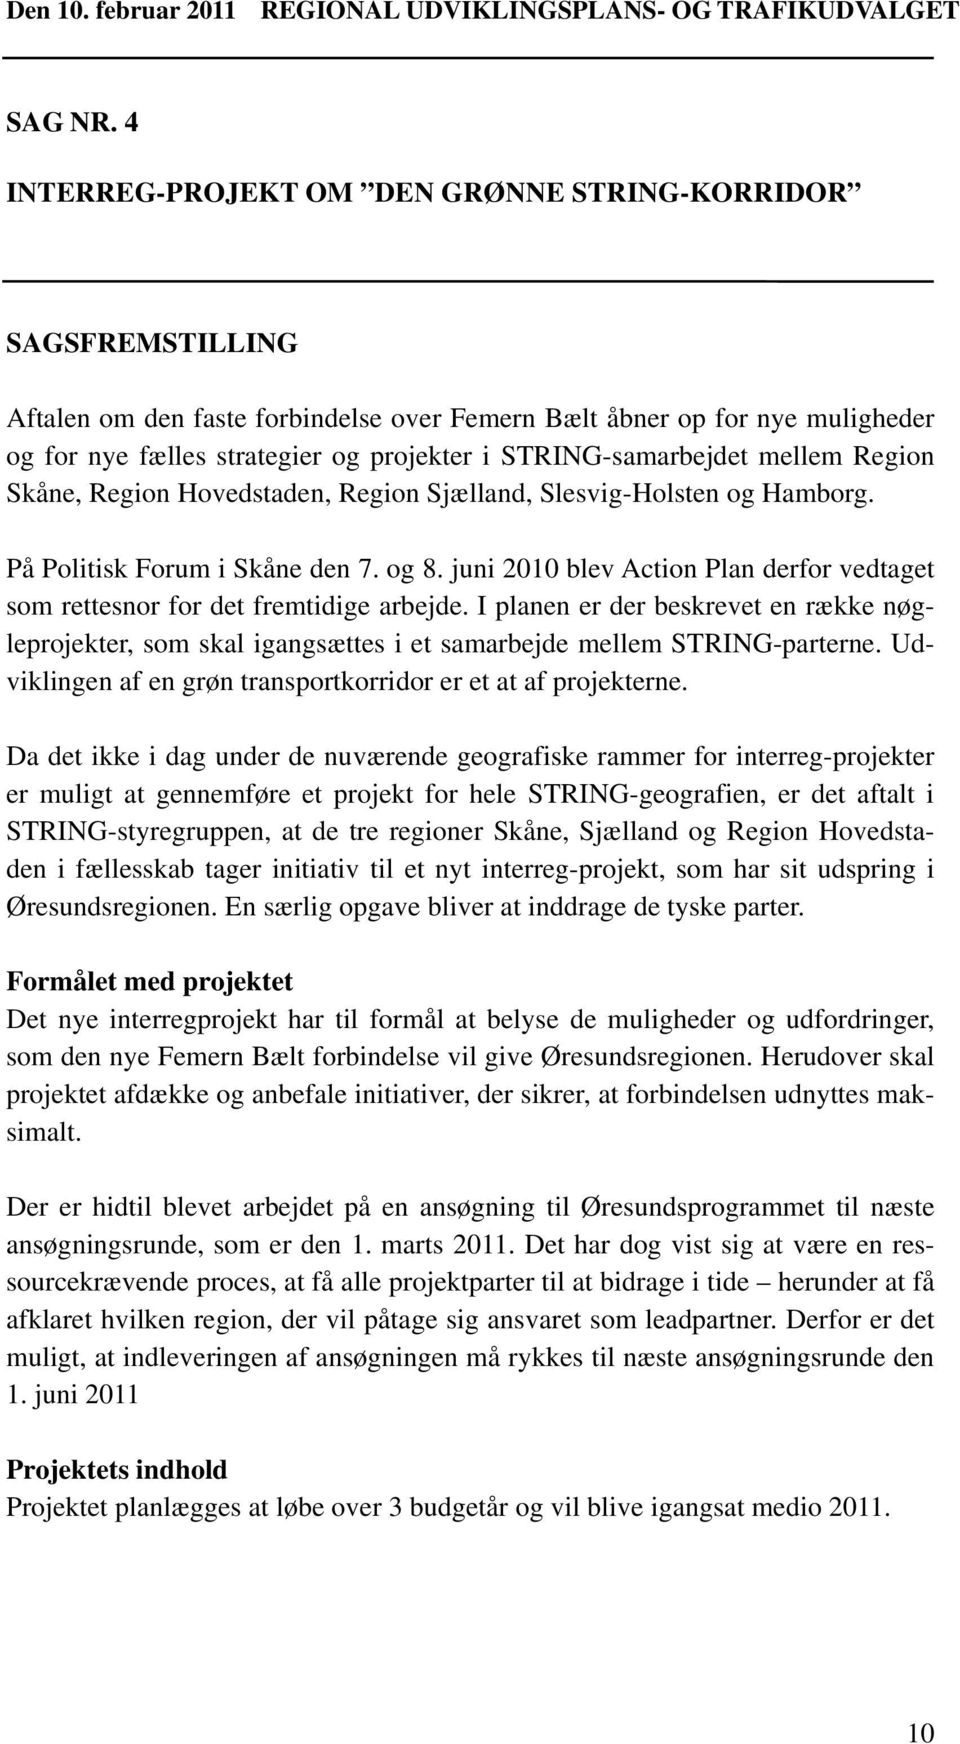 STRING-samarbejdet mellem Region Skåne, Region Hovedstaden, Region Sjælland, Slesvig-Holsten og Hamborg. På Politisk Forum i Skåne den 7. og 8.